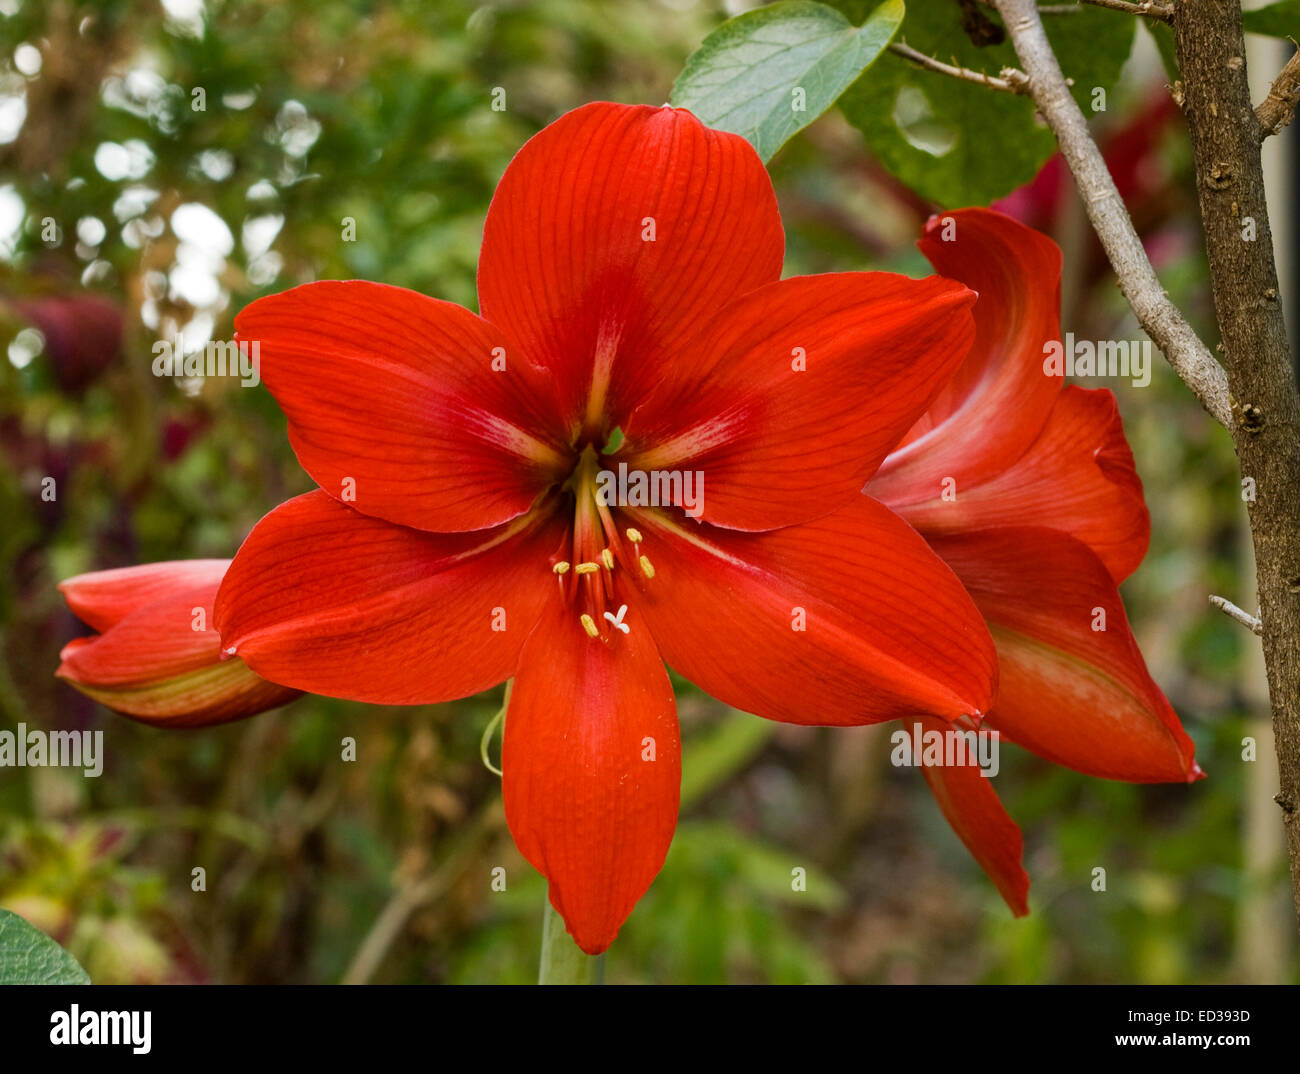 Large vivid red flower and bud of Hippeastrum cultivar 'Pamela' against ...